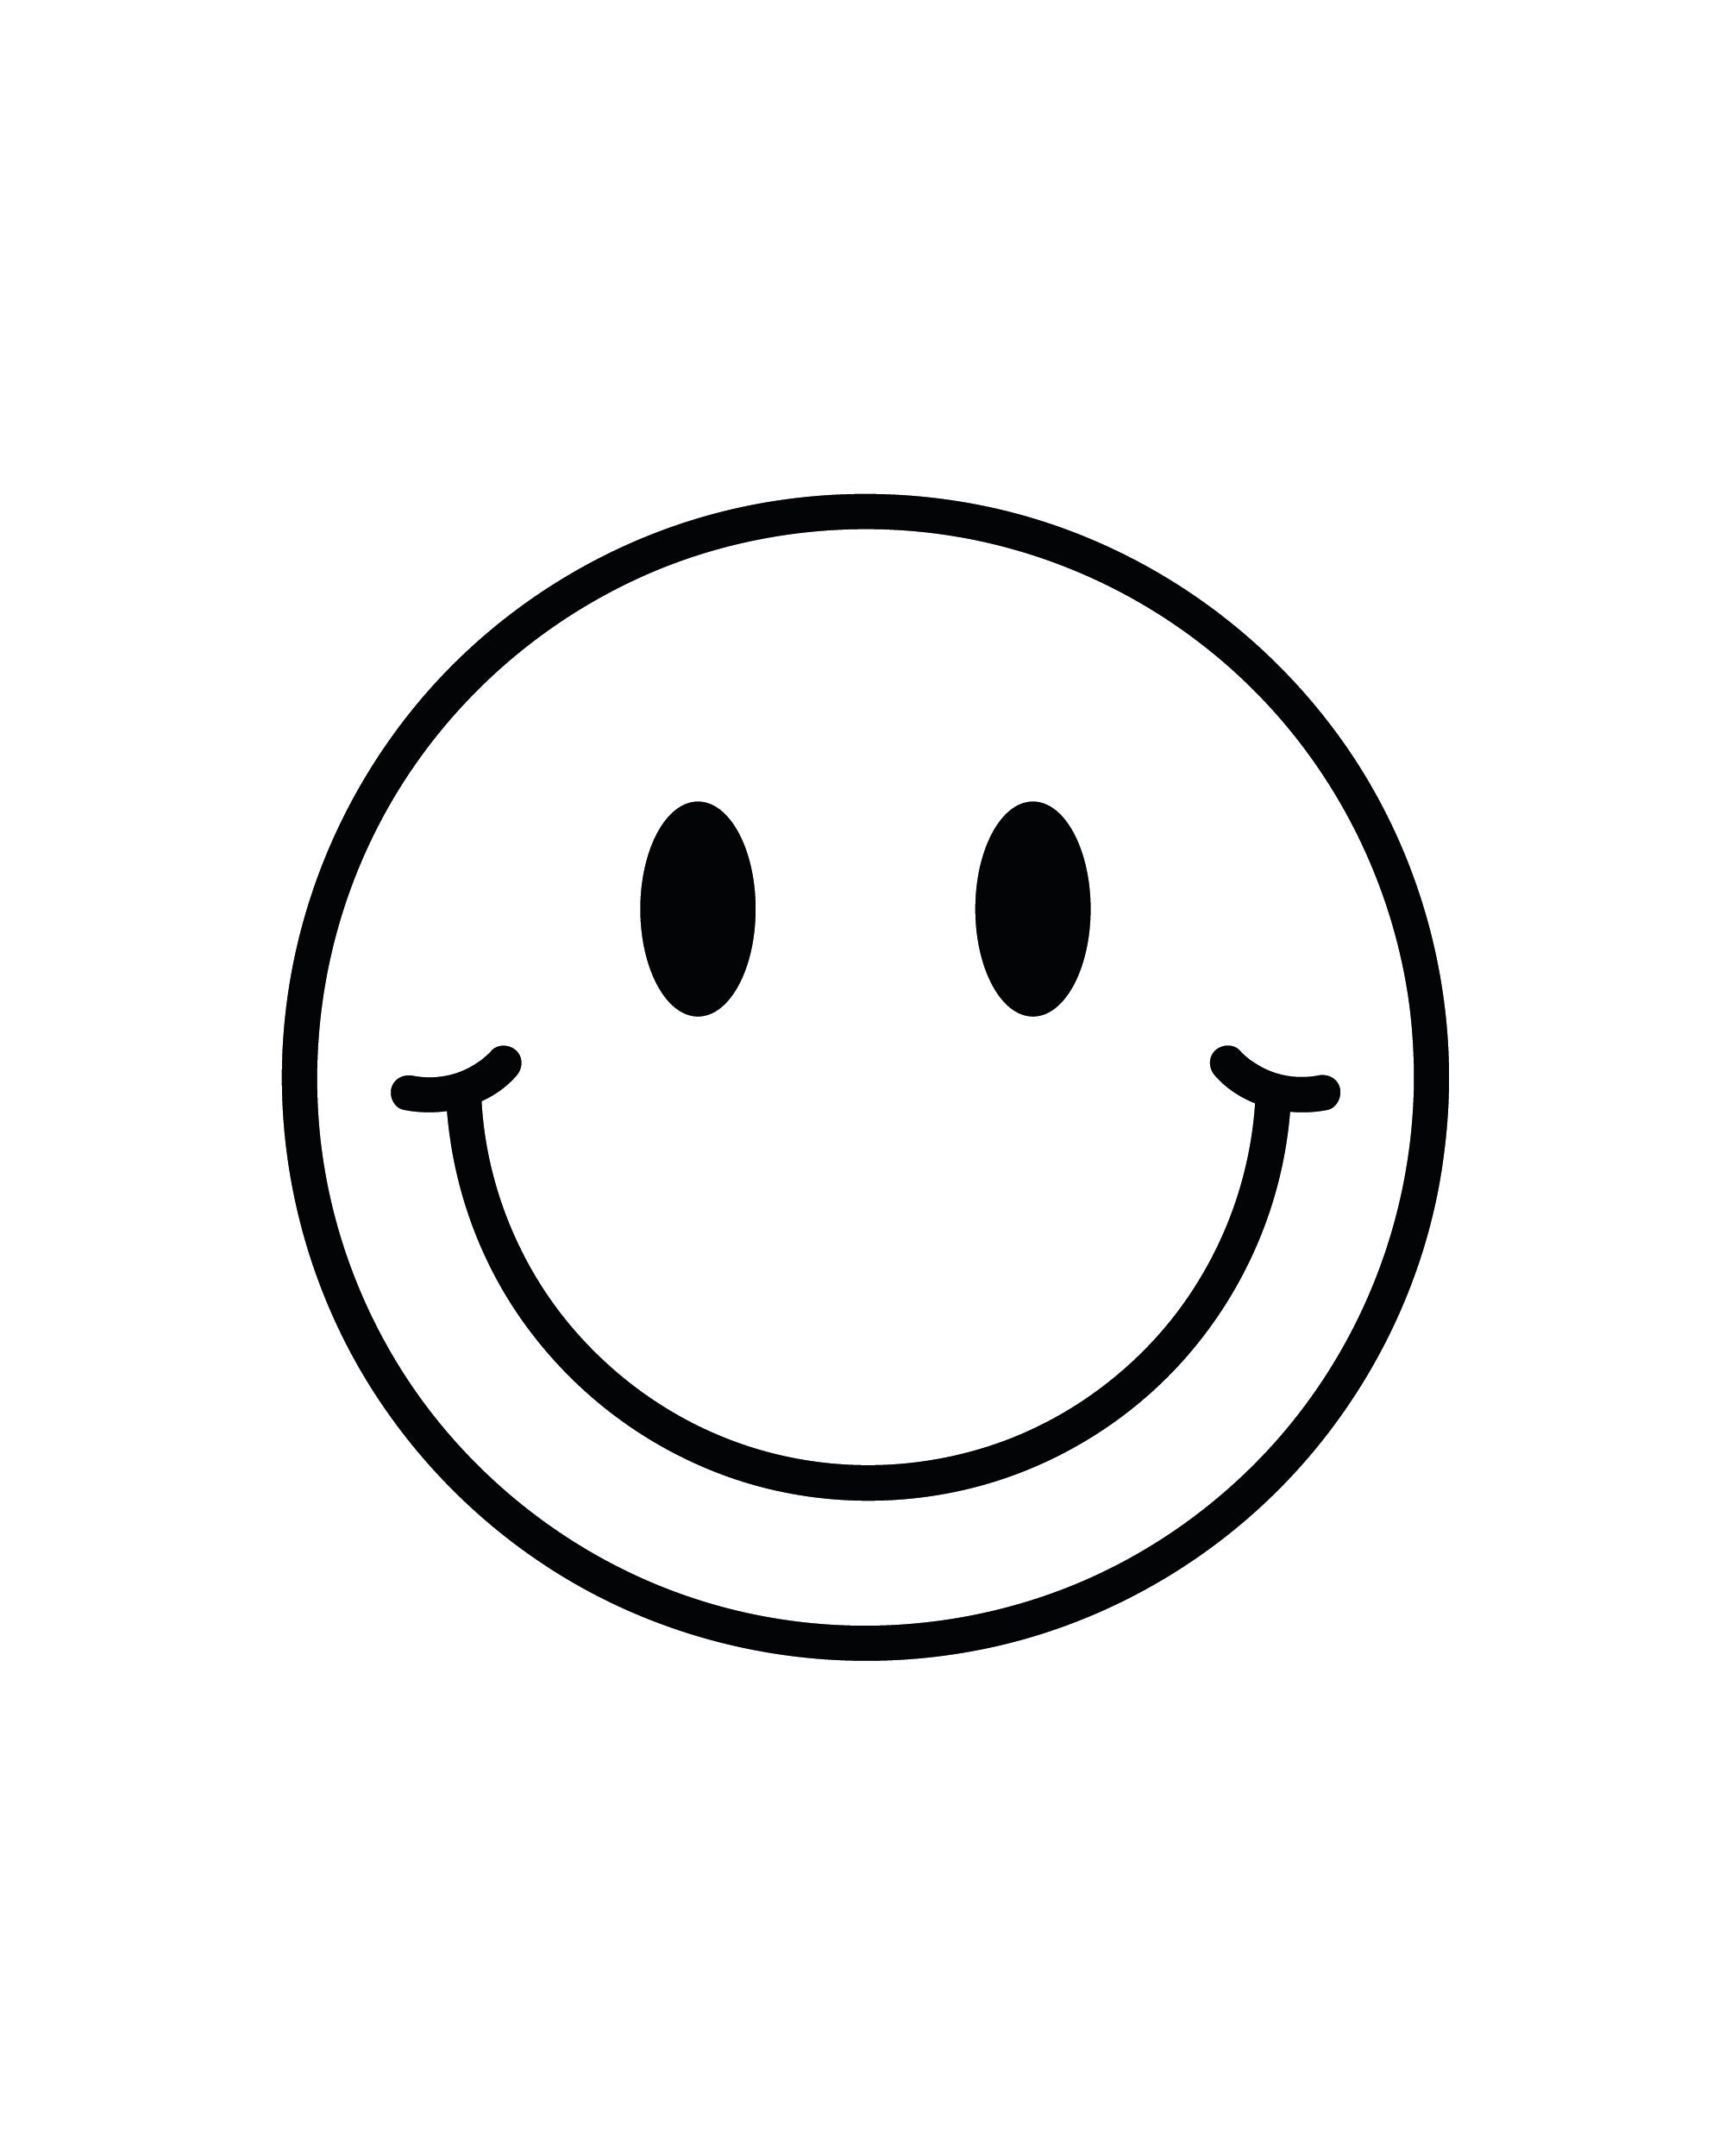 Smiley Face Digital Download SVG PNG JPG Dxf Ai Pdf 